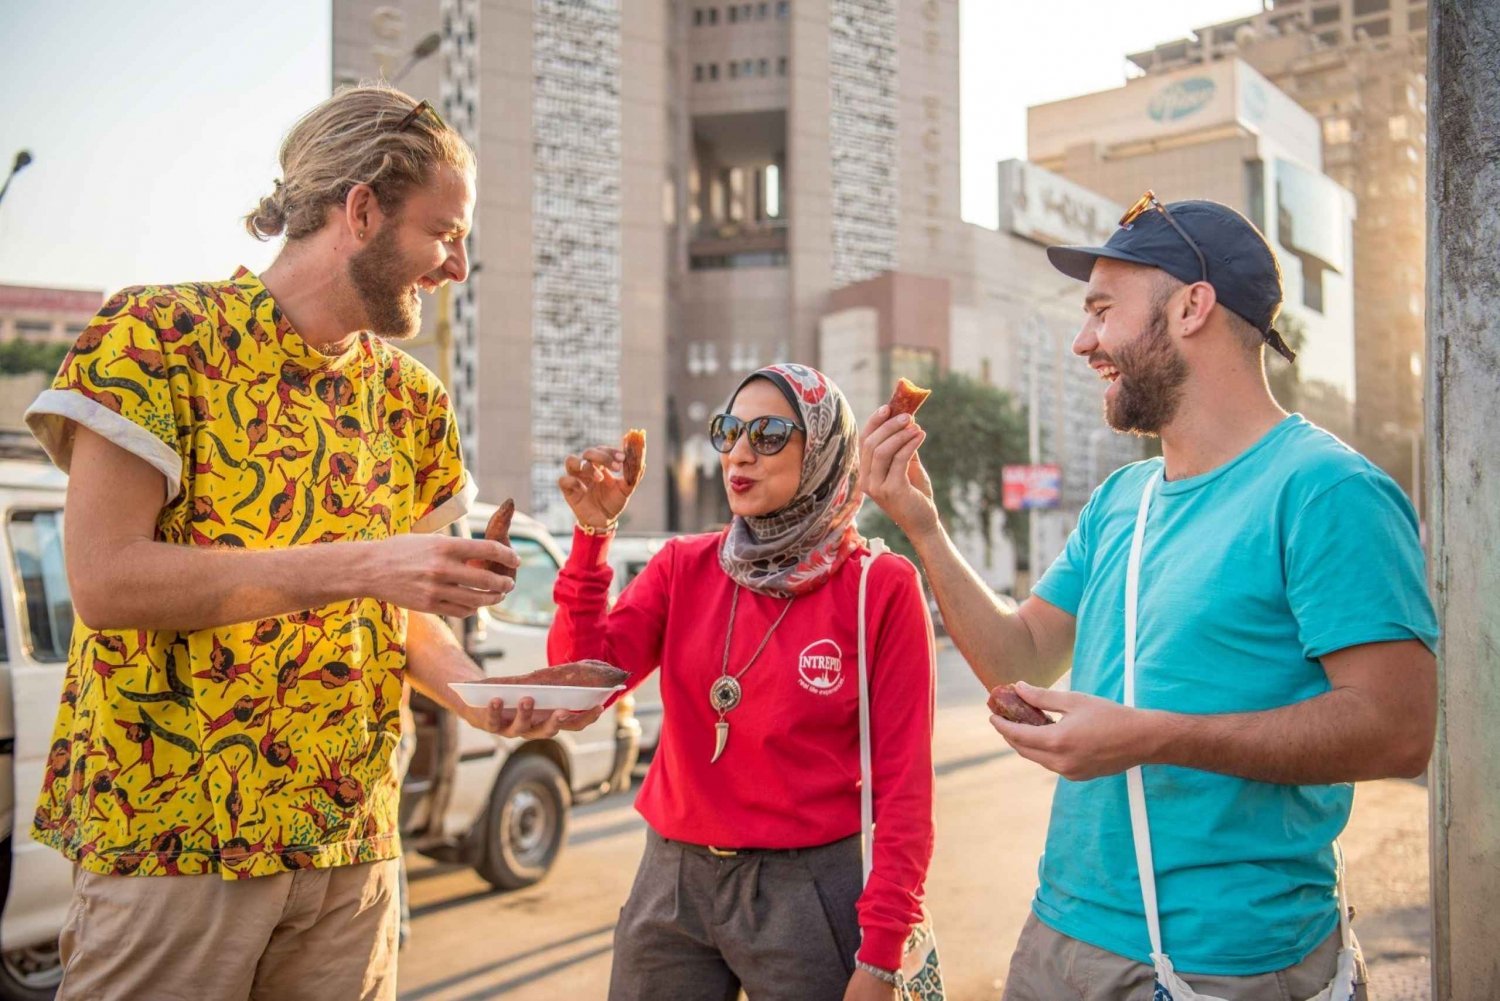 Privat Kairo: Schätze und Tut Tour